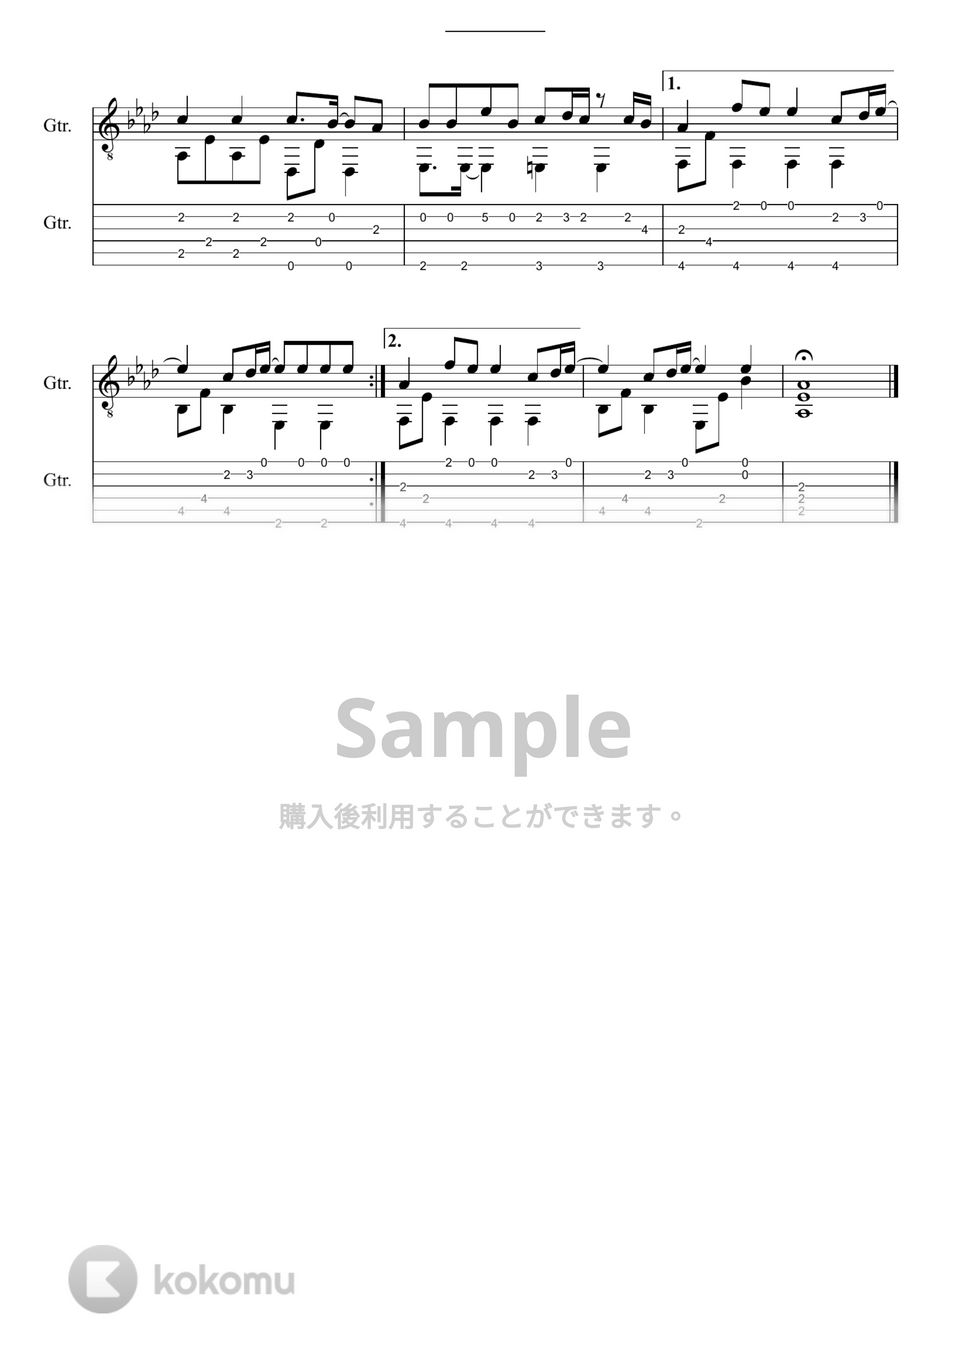 嵐メドレー - ARASHI on GUITAR (10曲収録) by 鷹城-Takajoe-